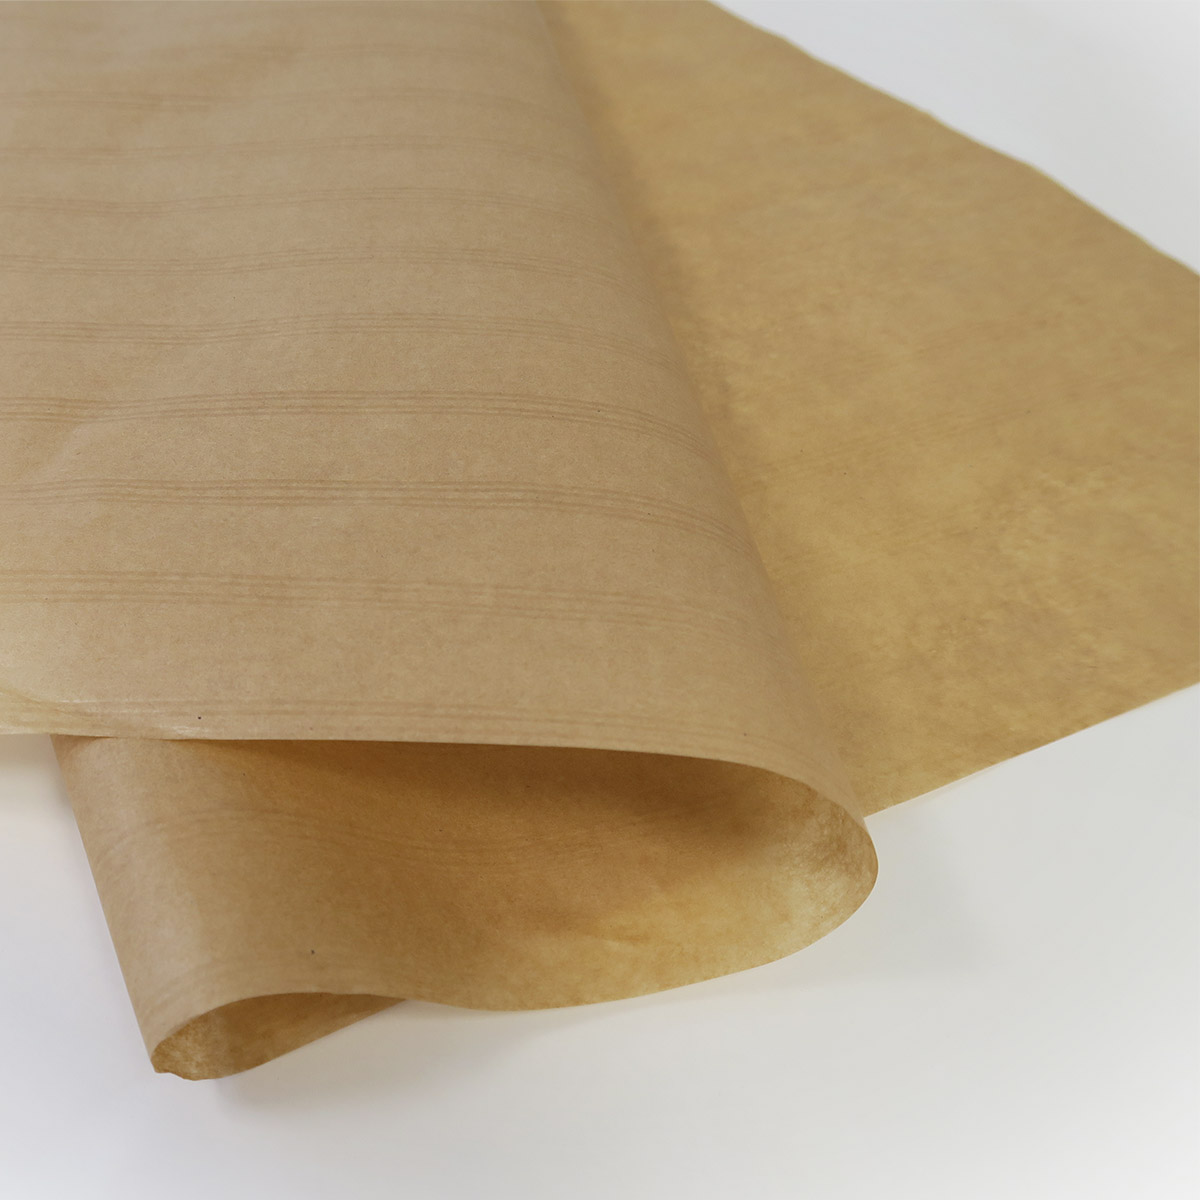 1 rouleau de papier de calage en kraft brun 20cm x 250m - La Poste